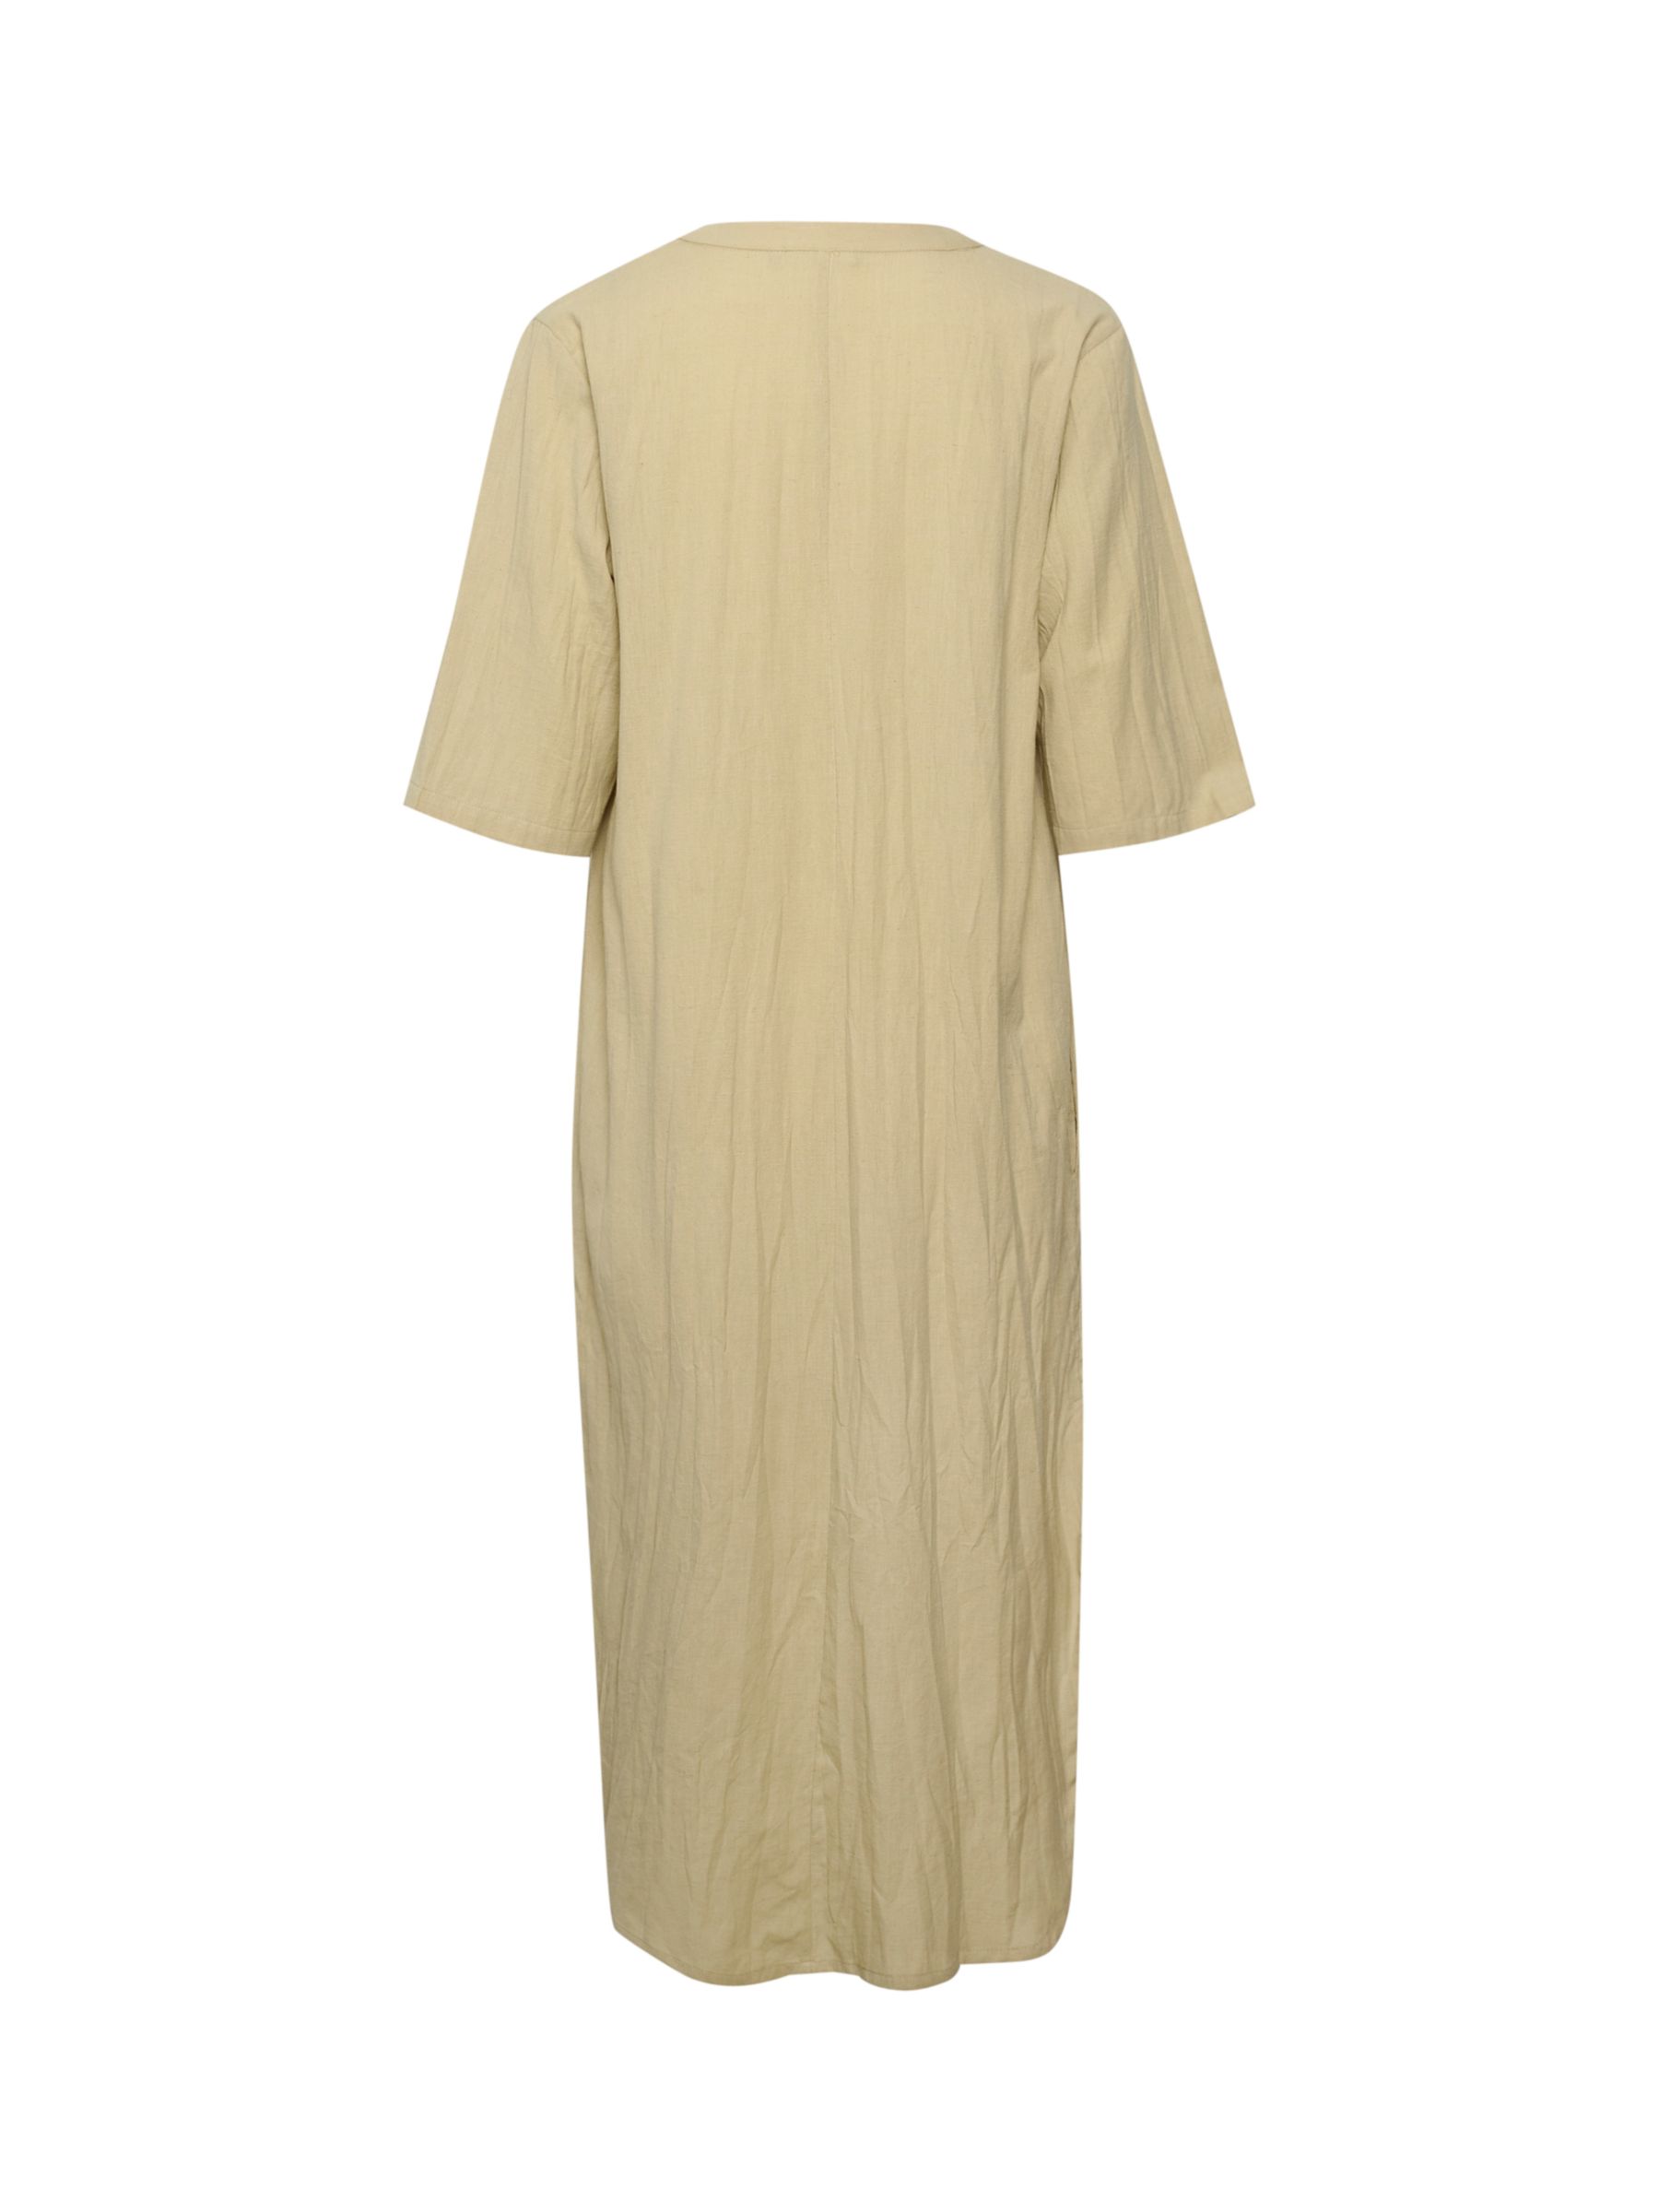 KAFFE Majse Cotton Linen Blend Kaftan Dress, Feather Grey, 8